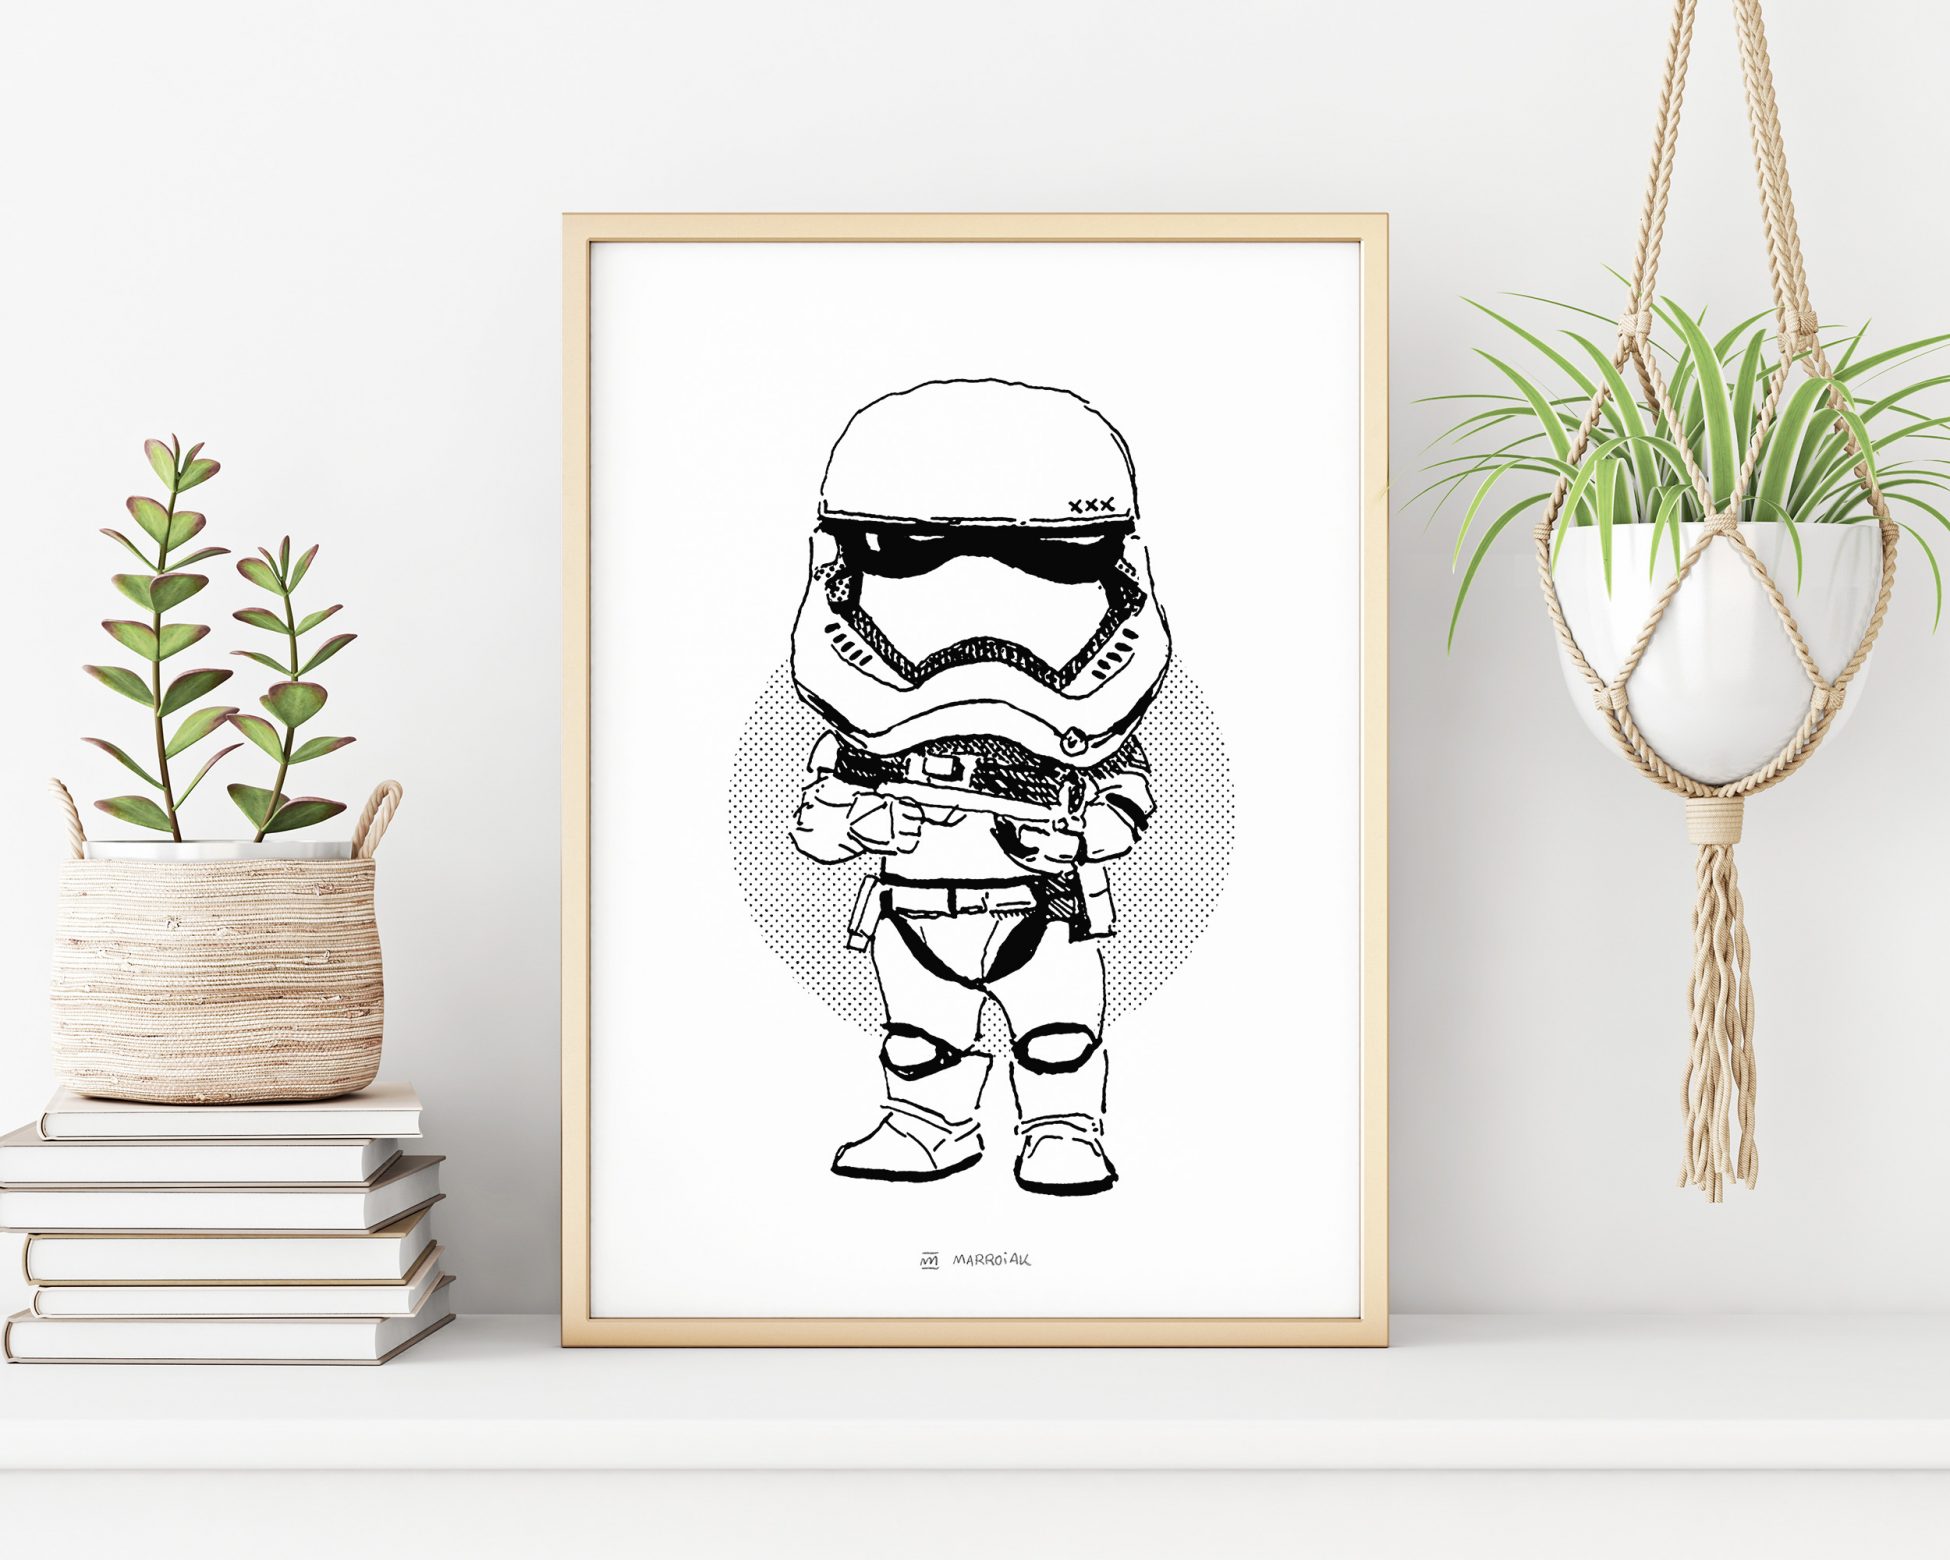 Lámina enmarcada con una ilustración de un Stormtrooper de la saga de películas Star Wars. Dibujo en blanco y negro. Decoración geek.